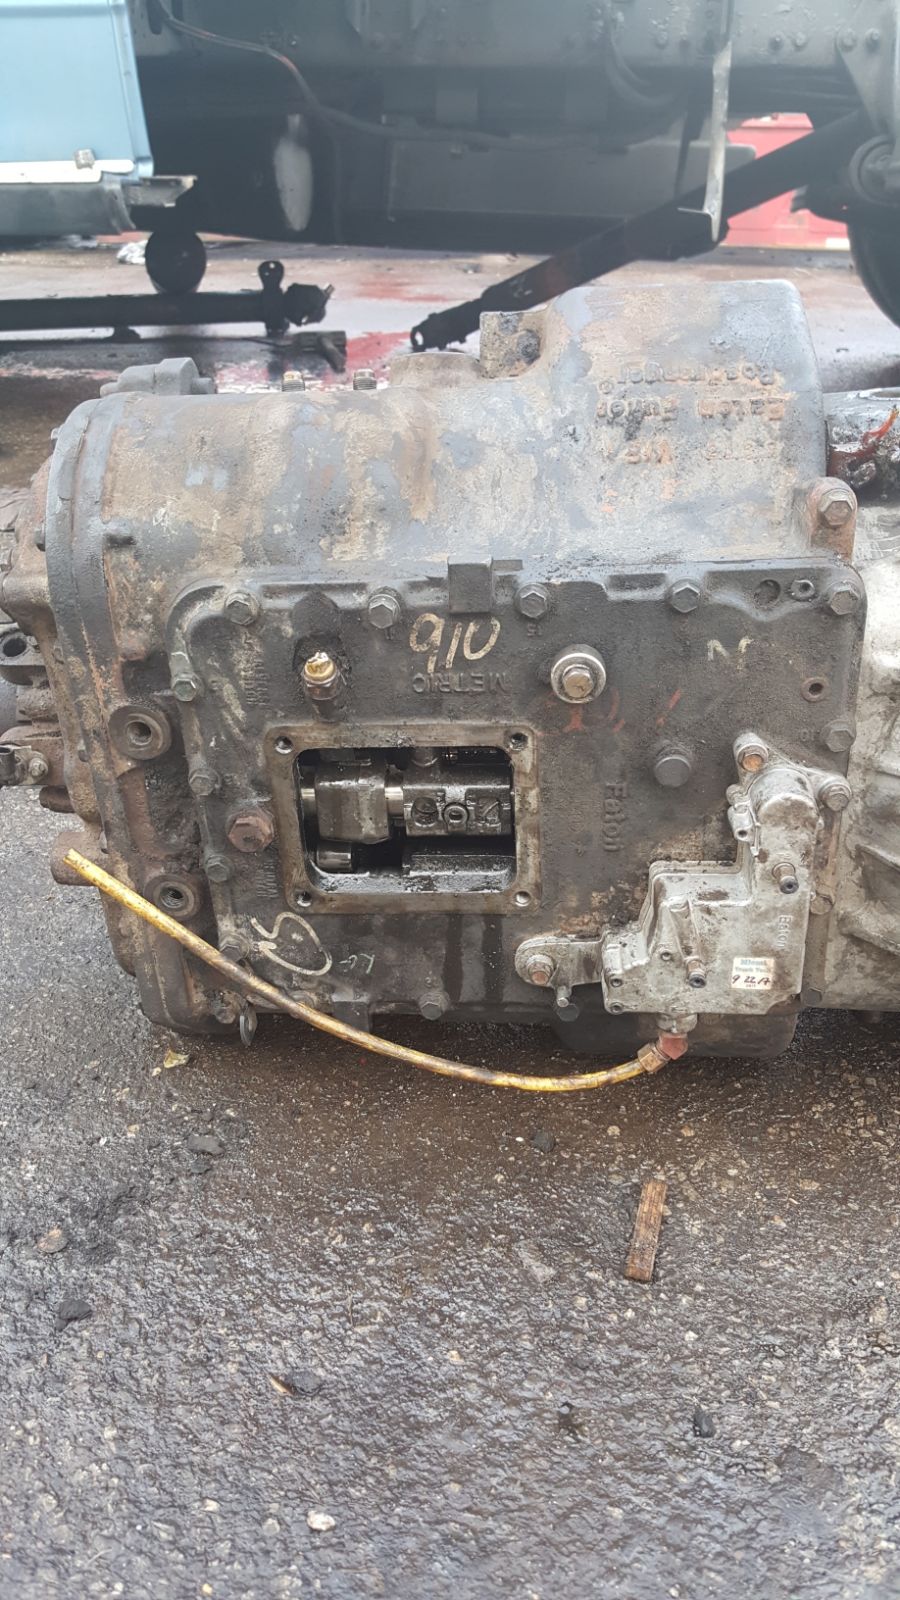 Ernies Truck and Tire Repair | 1324 US-42, London, OH 43140 | Phone: (614) 736-3037